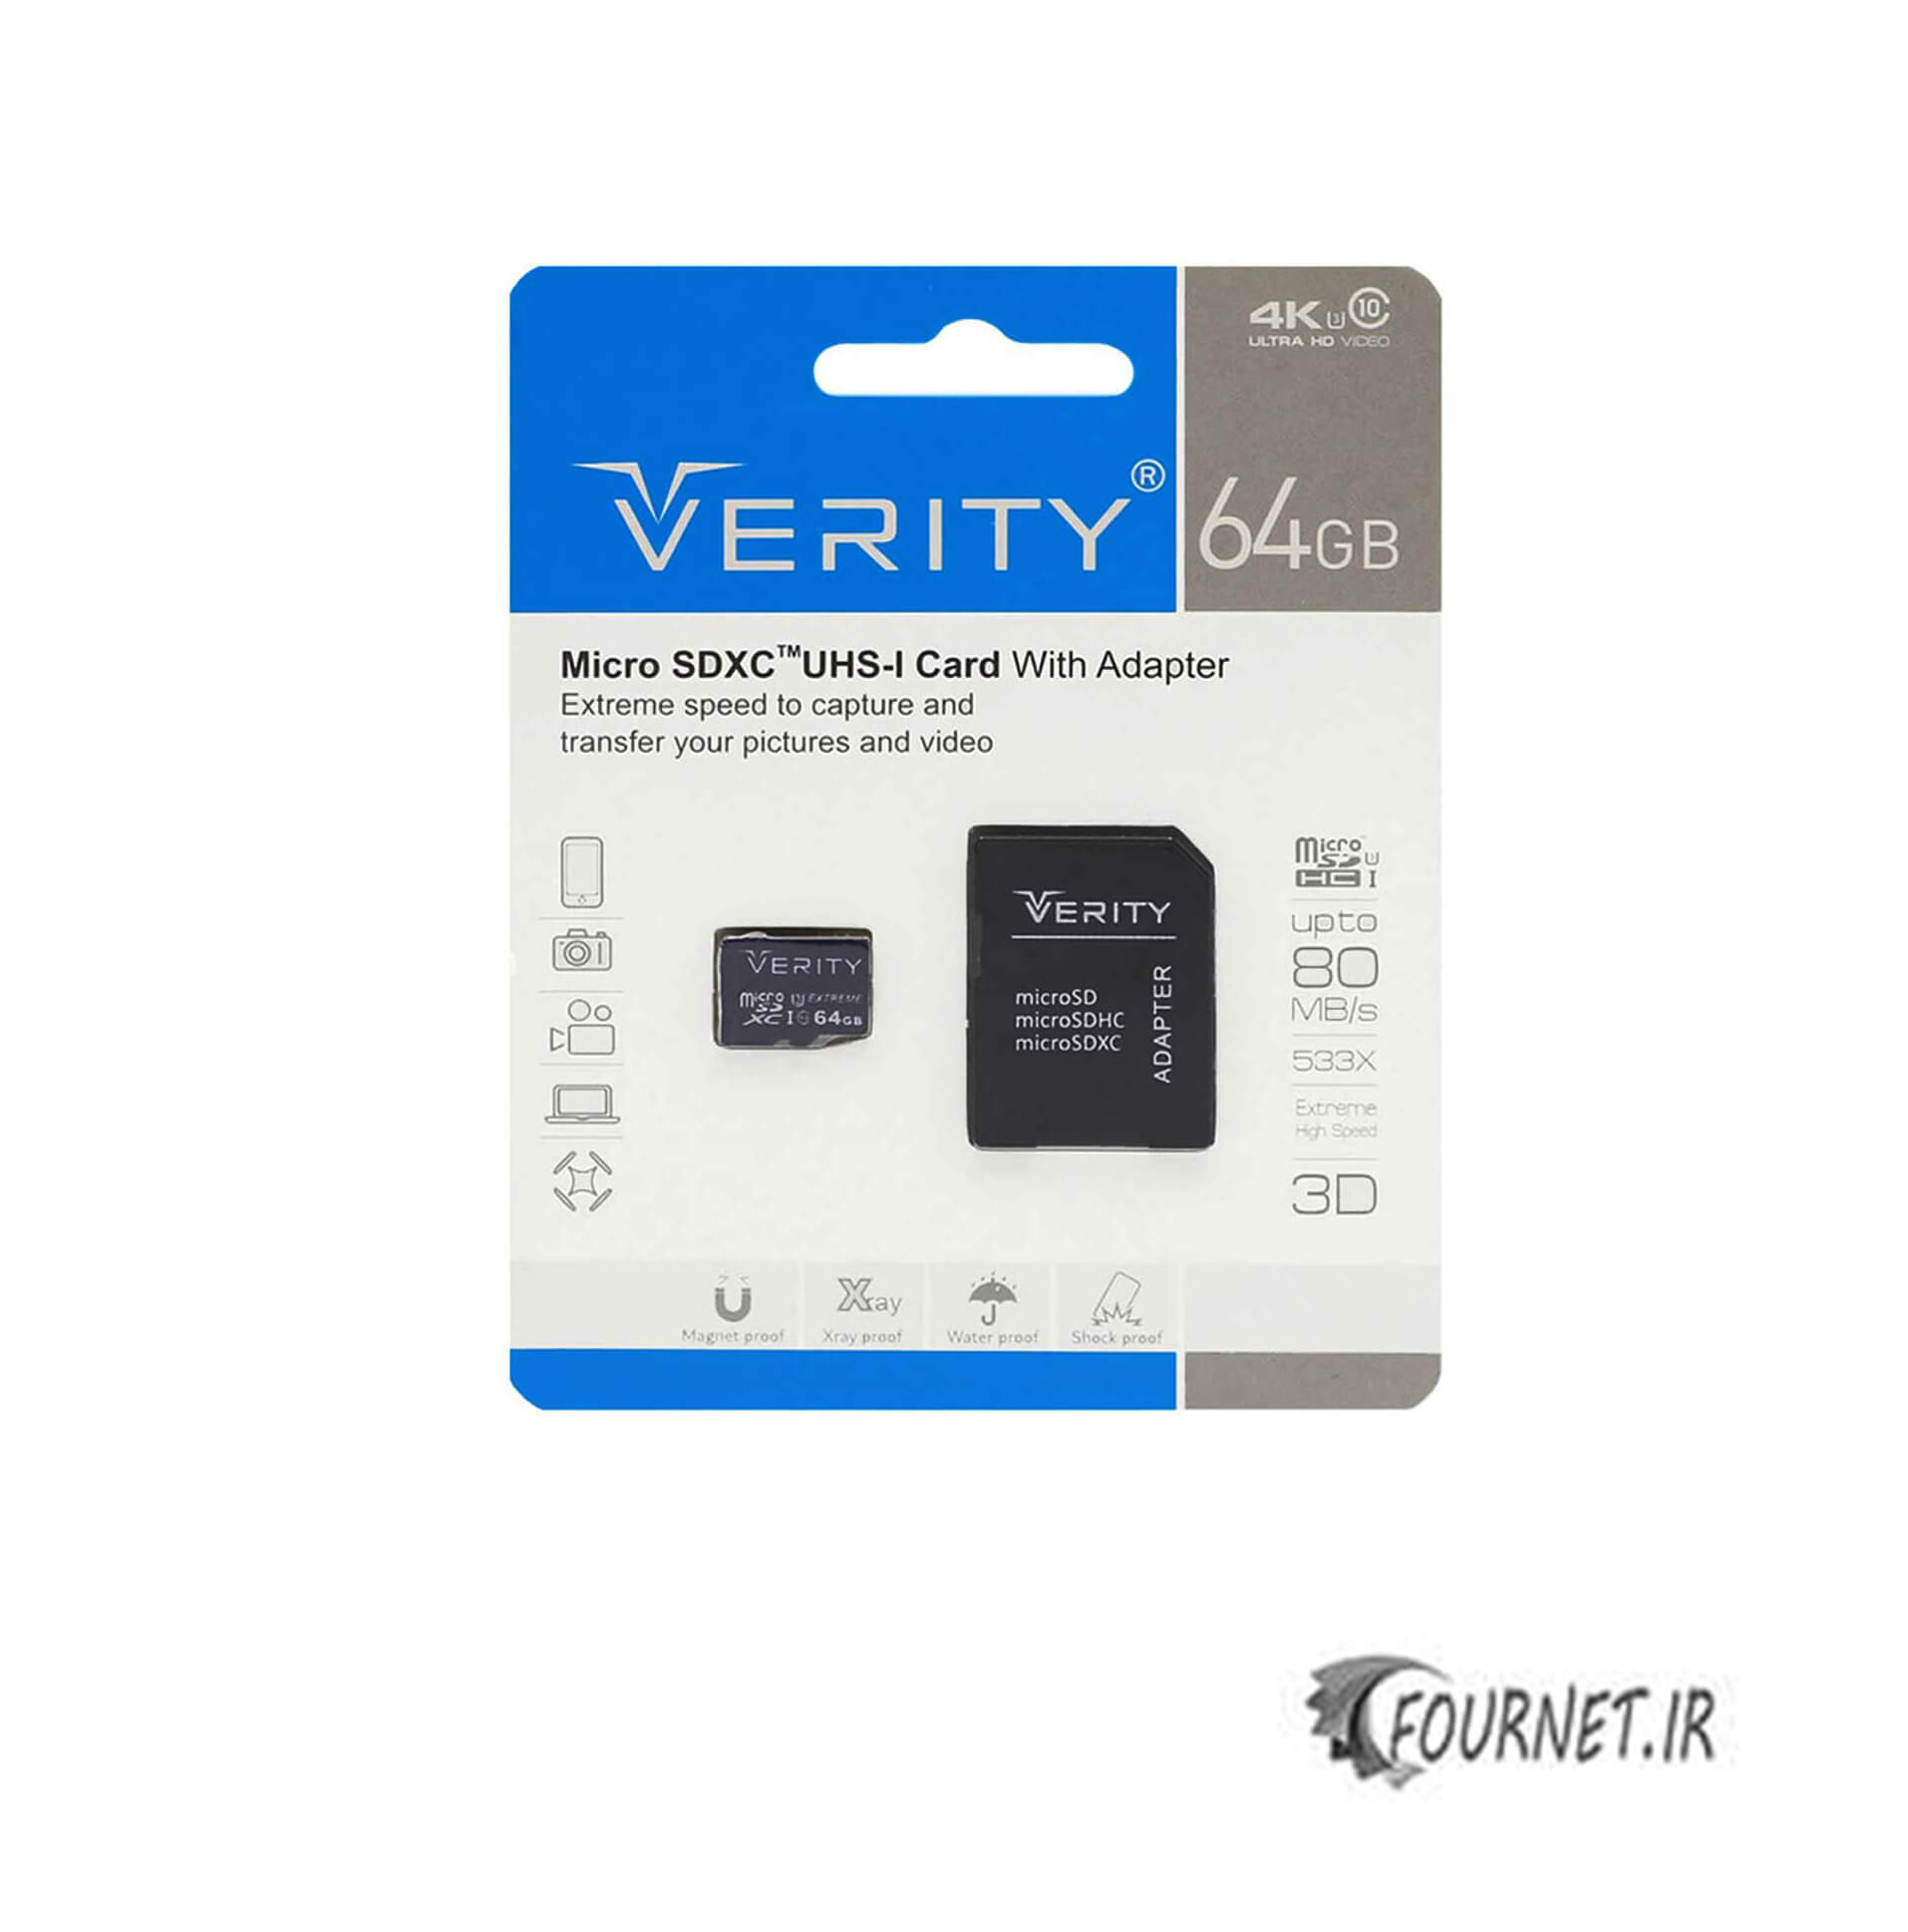 Verity microSDXC 64 gb